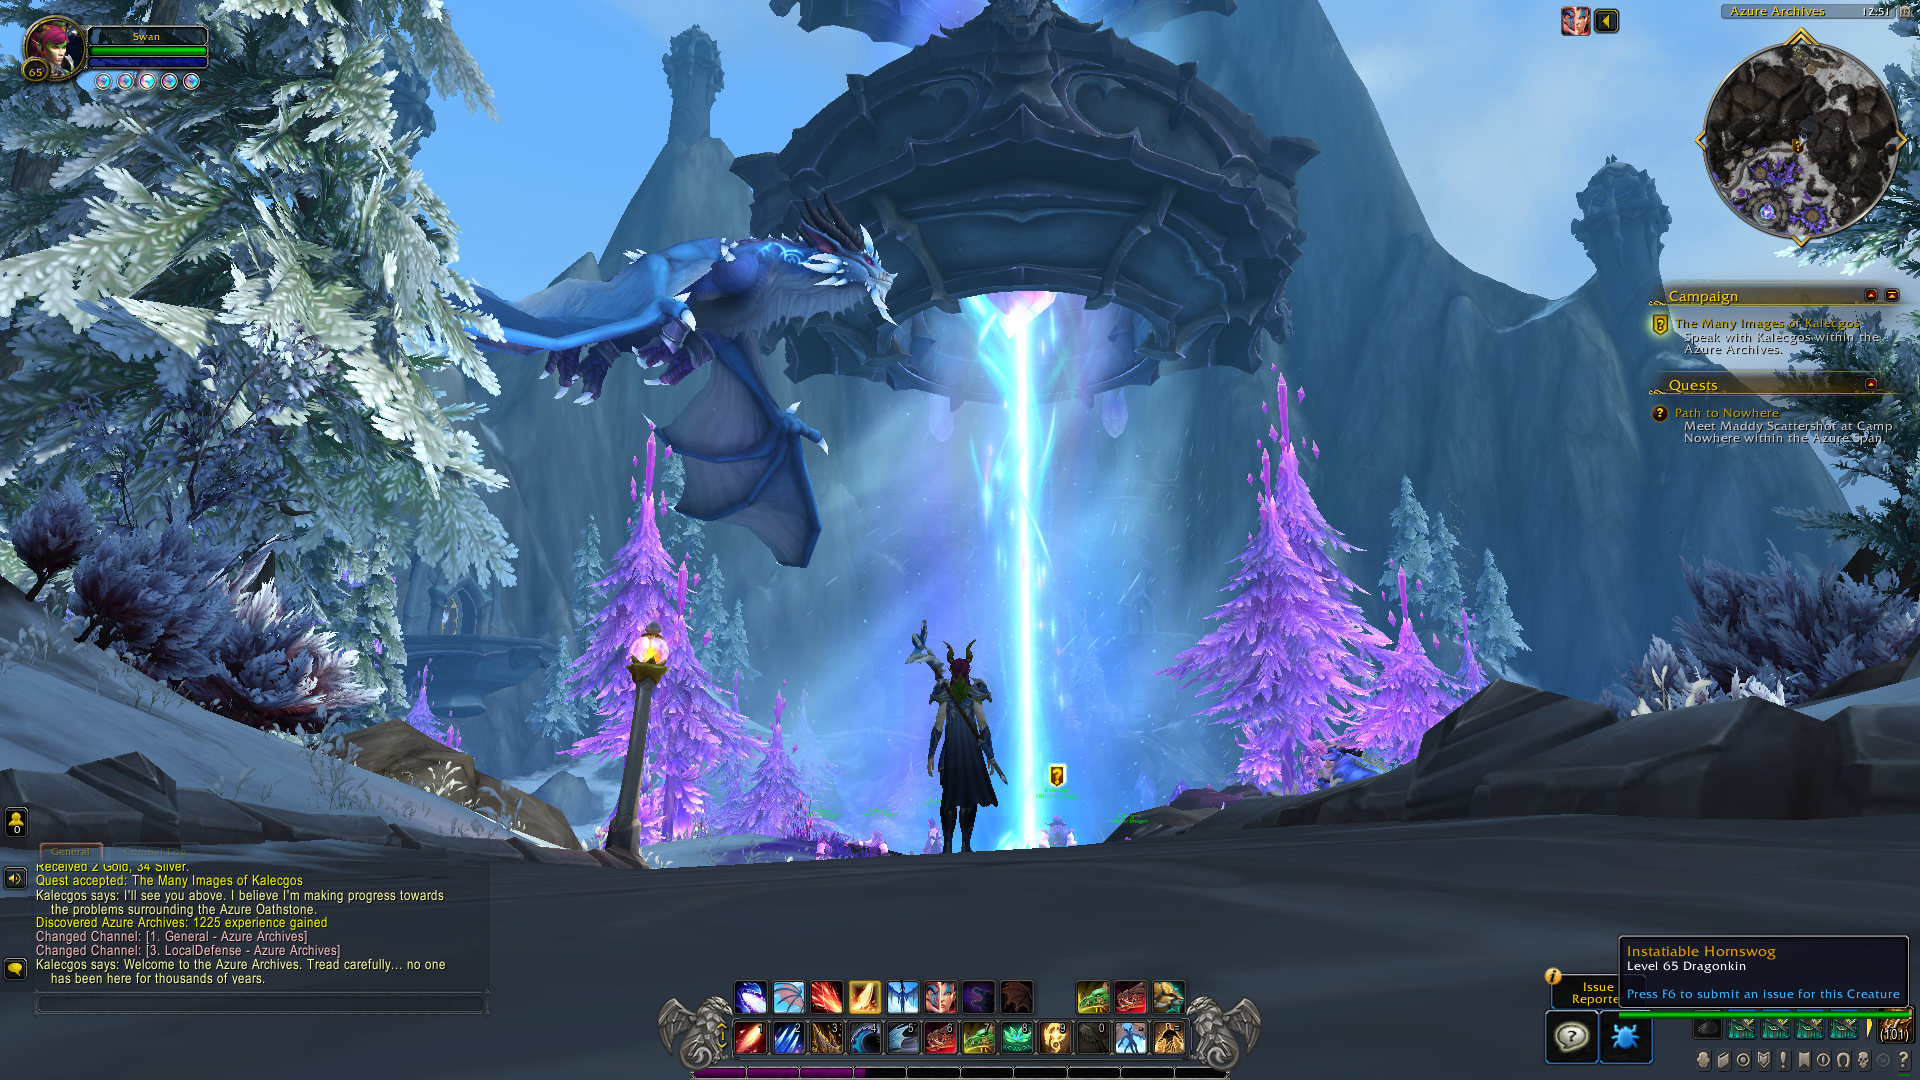 Il dracthyr femminile di World of Warcraft wow dragonflight guarda la torre e il kalecgos che volano sopra